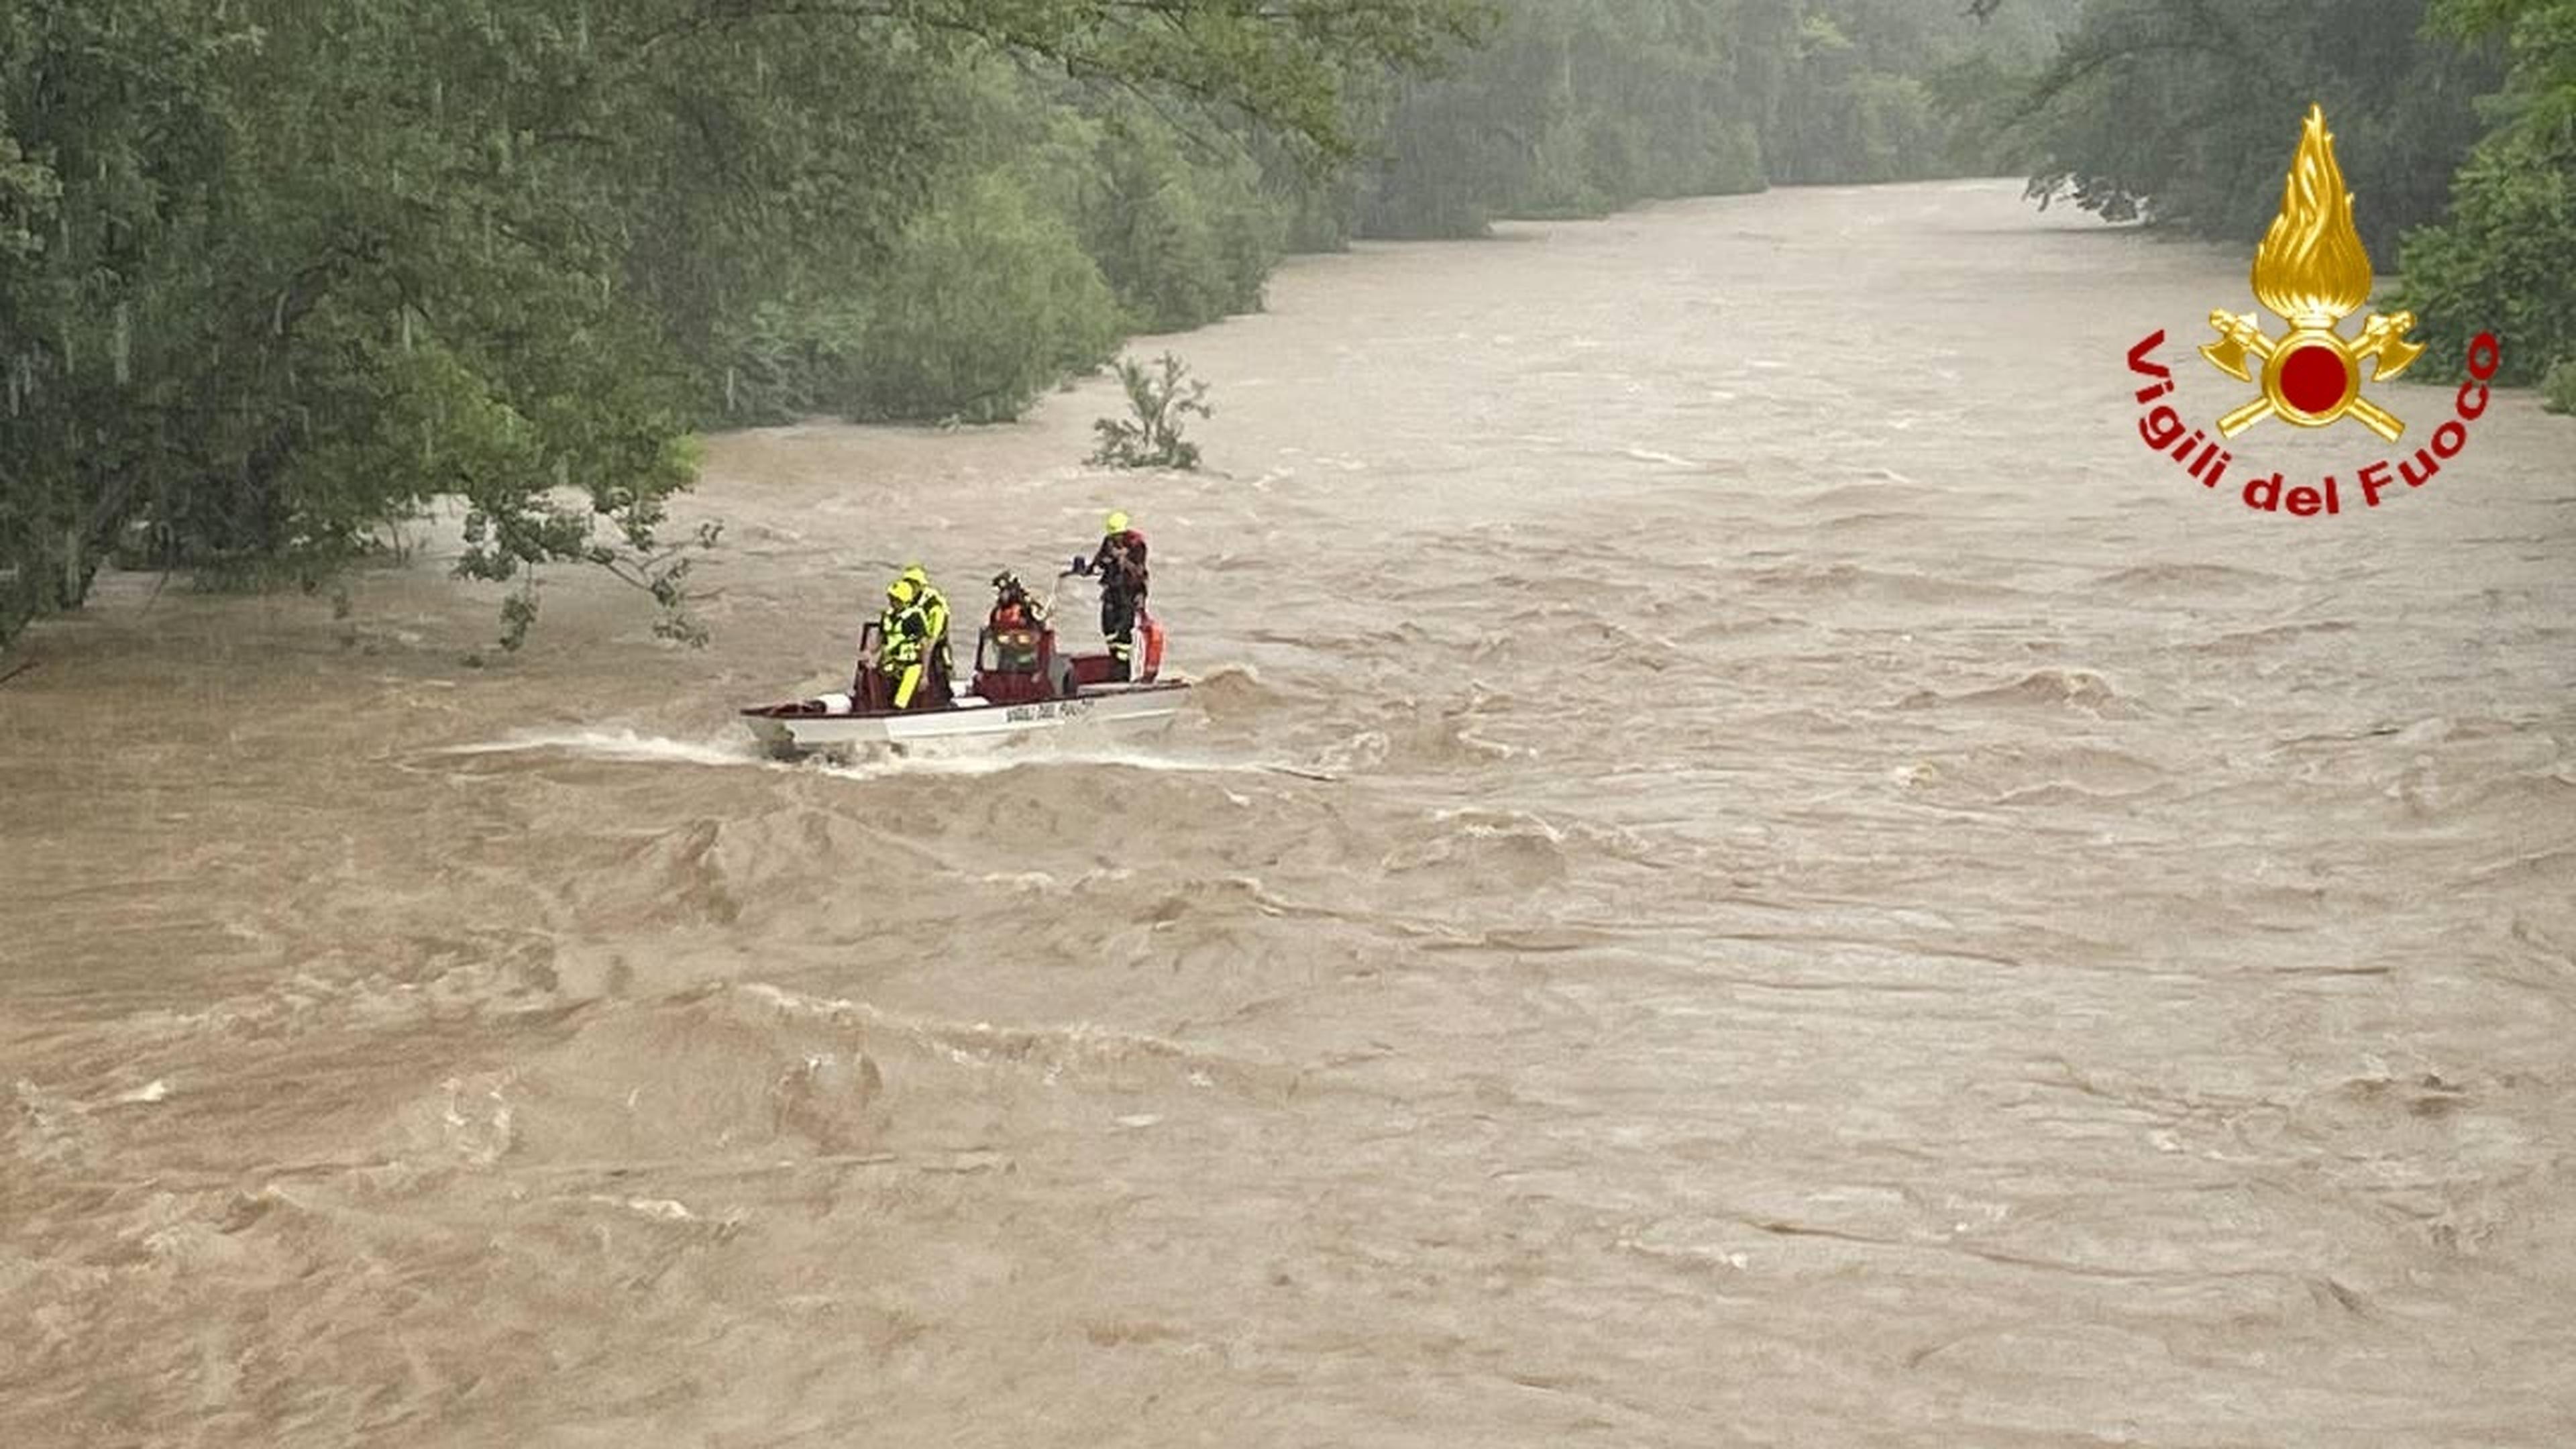 Italien, Premariacco: Die von der italienischen Feuerwehr herausgegeben Aufnahme zeigt Einsatzkräfte der italienischen Feuerwehr die in dem Fluss Natisone nach drei Vermissten suchen.